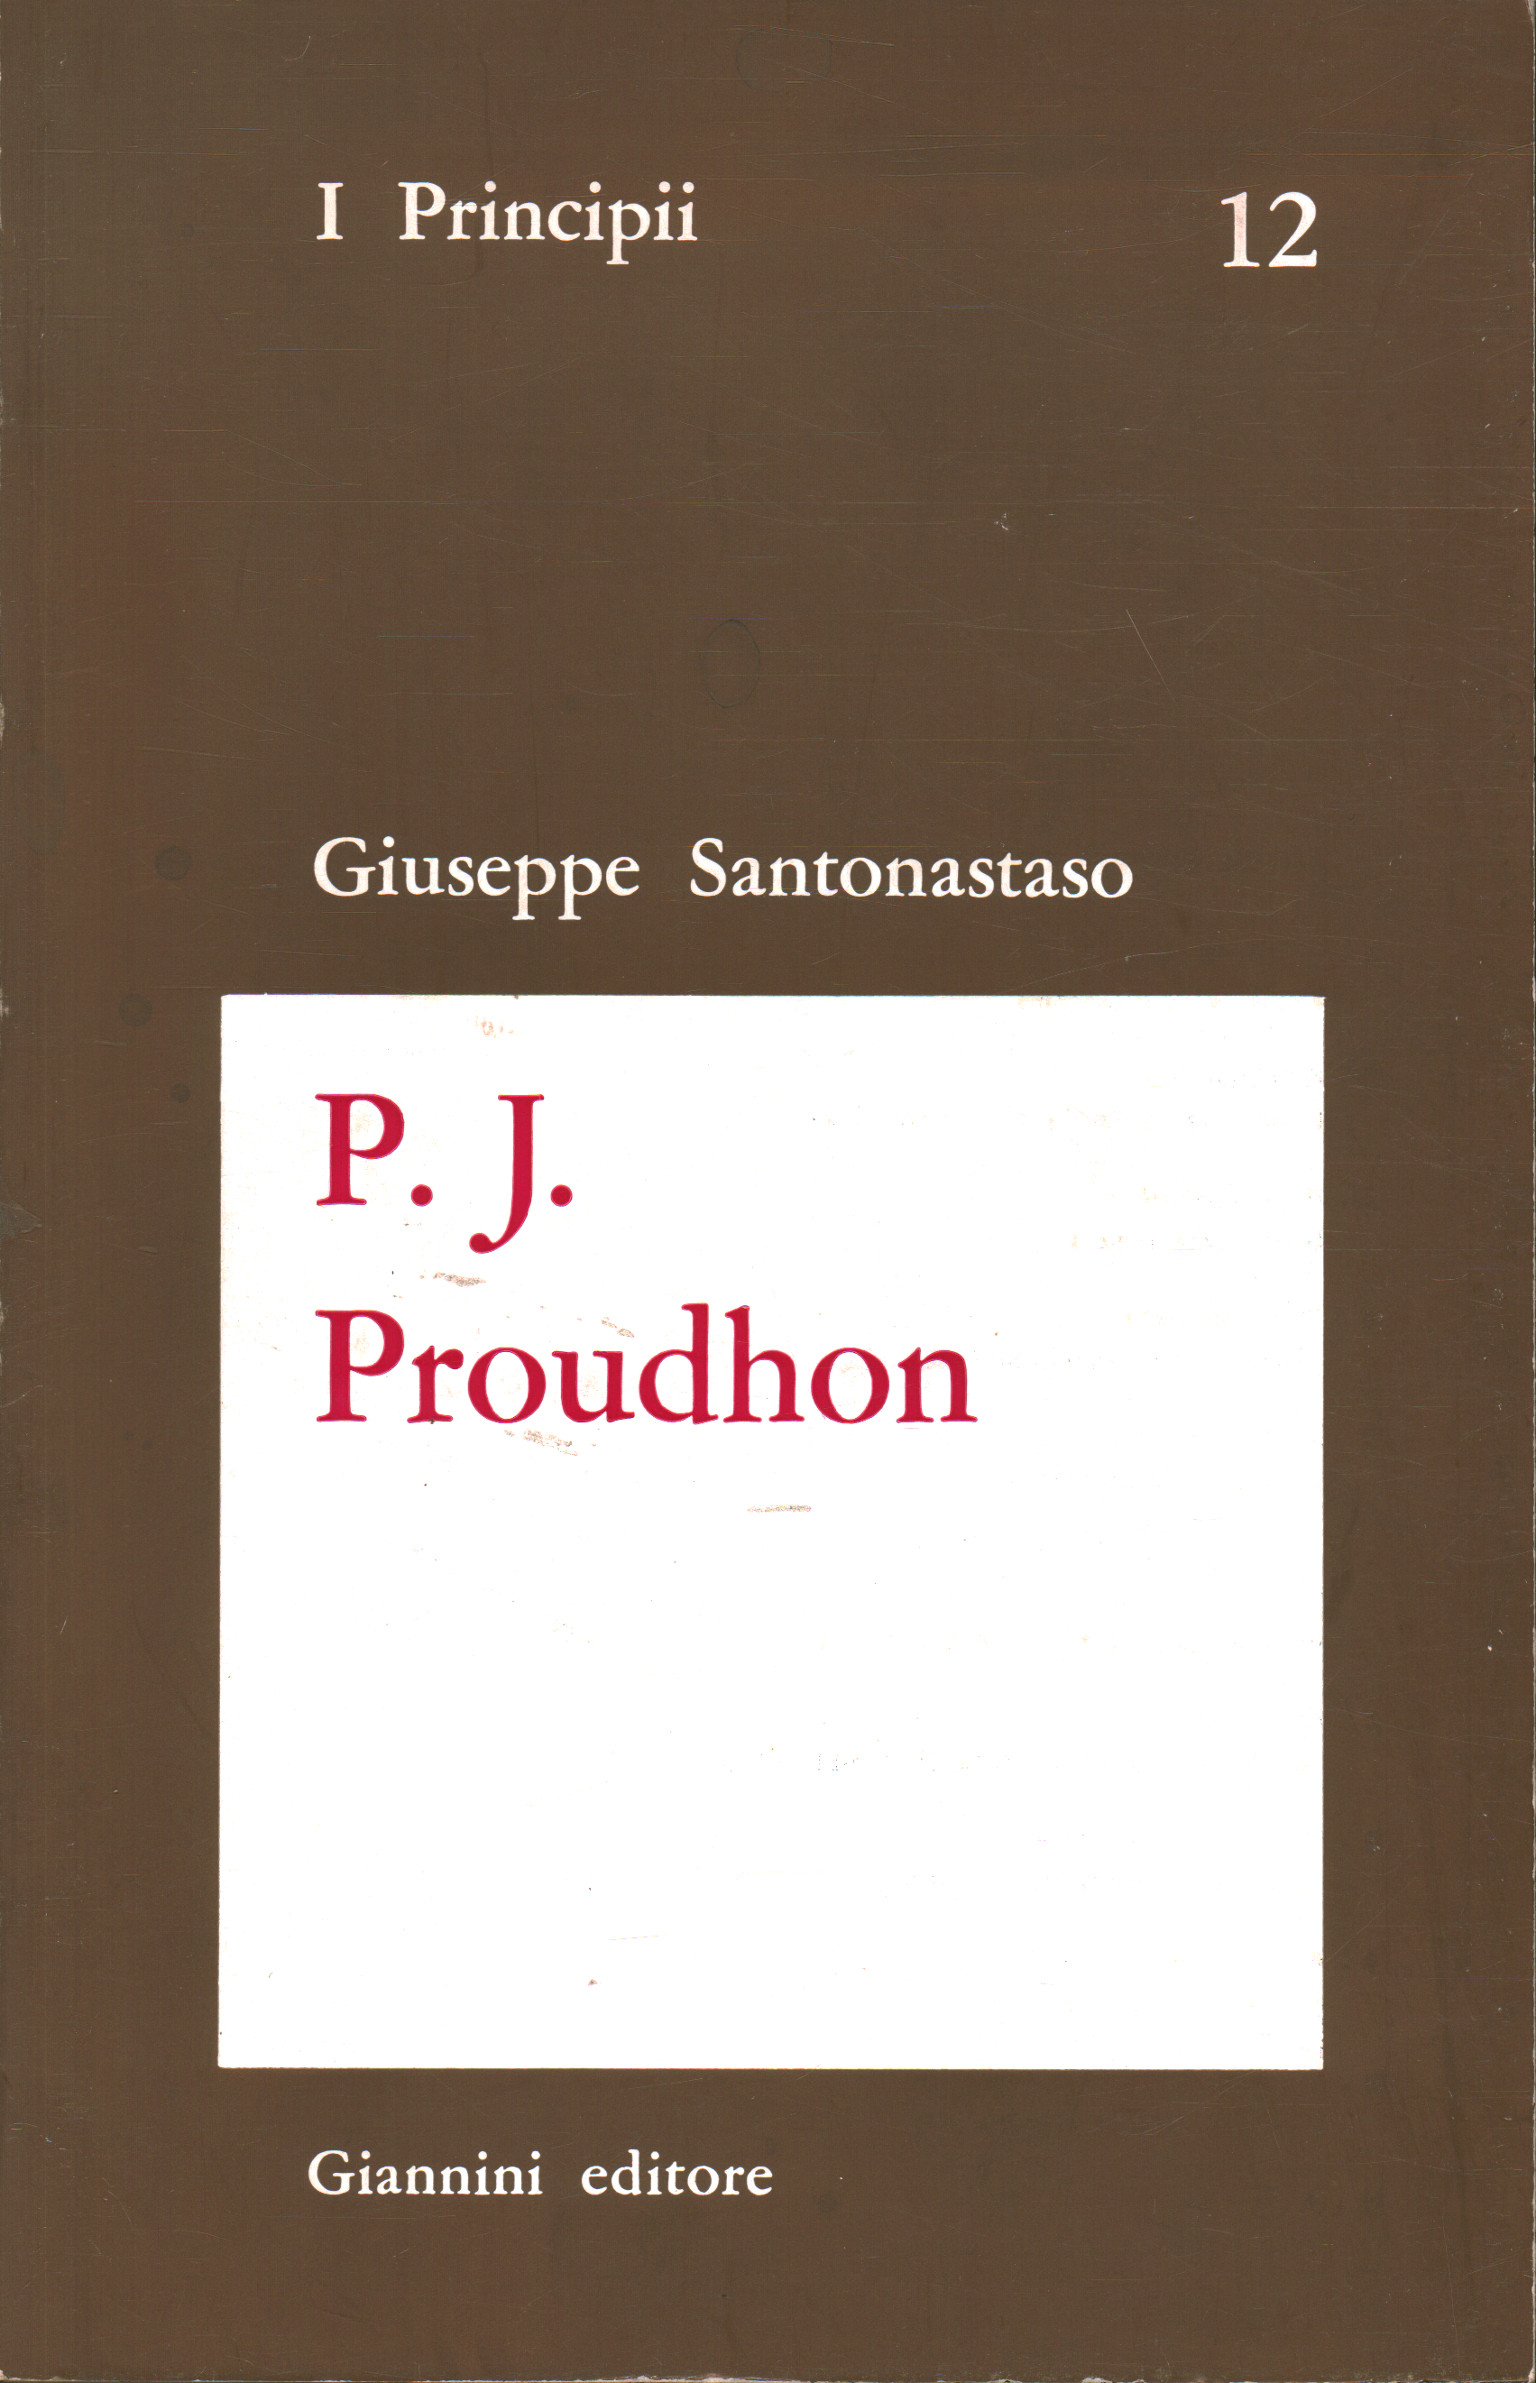 P. J. Proudhon, Giuseppe Santonastaso